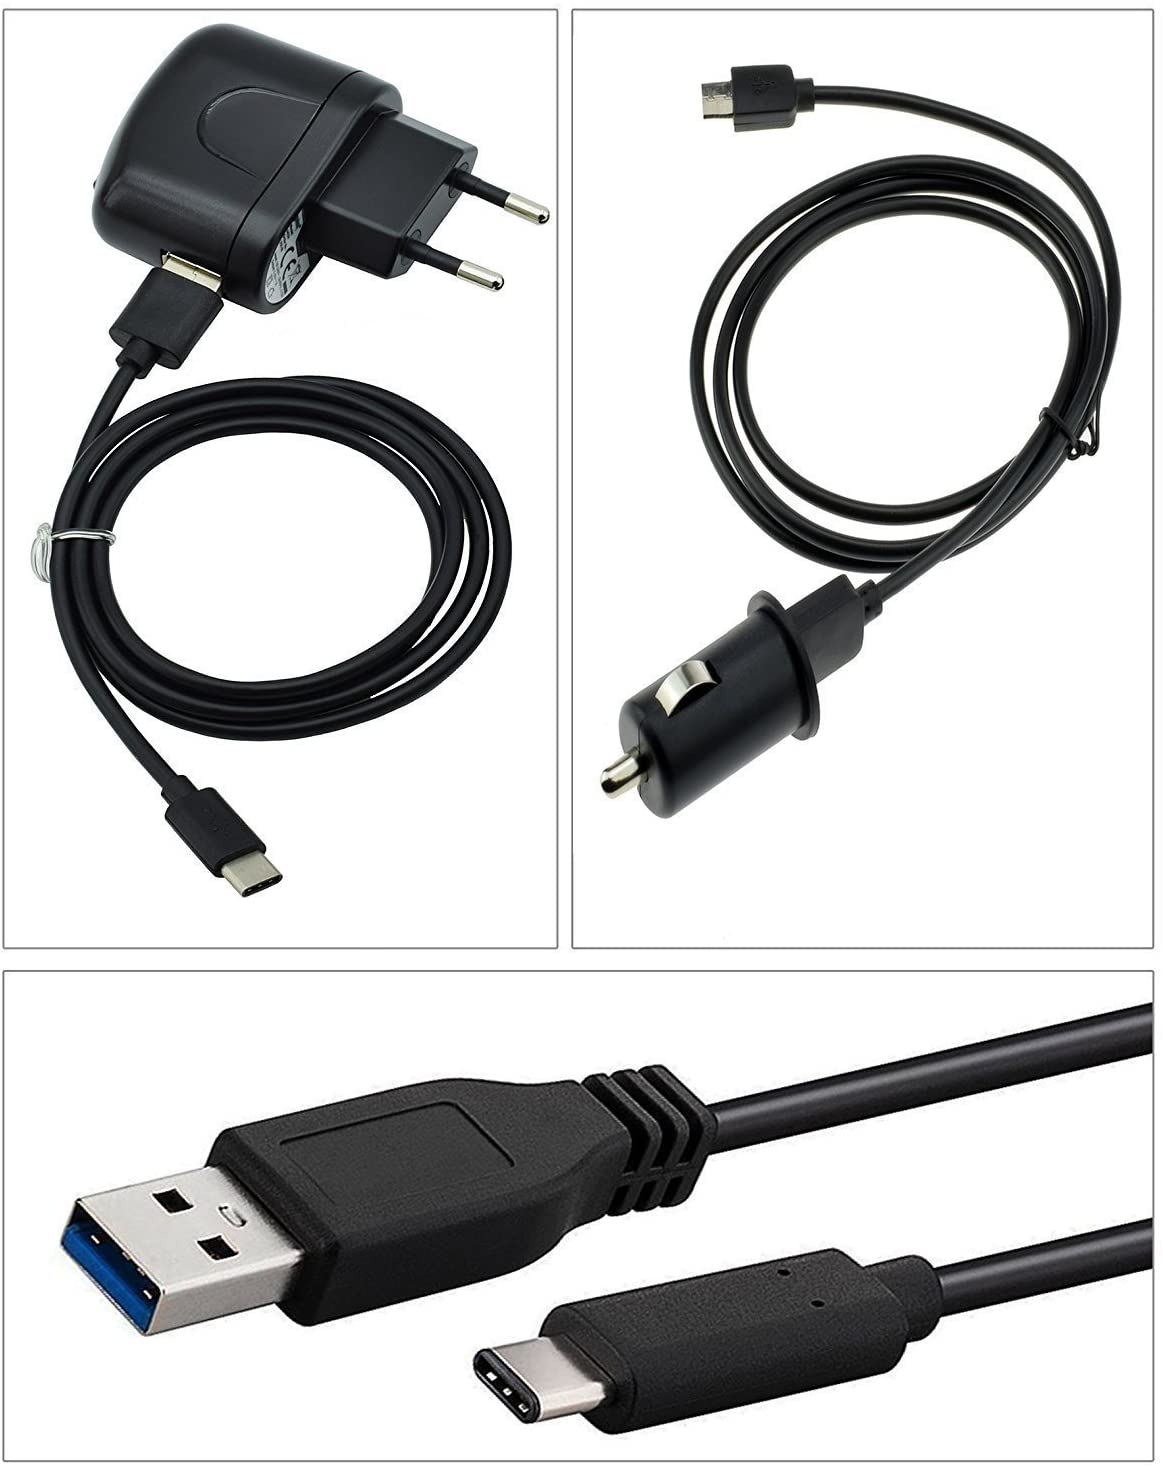 4 in 1 Ladegerät Set Kfz / Netz für Geräte mit USB-C Anschluß